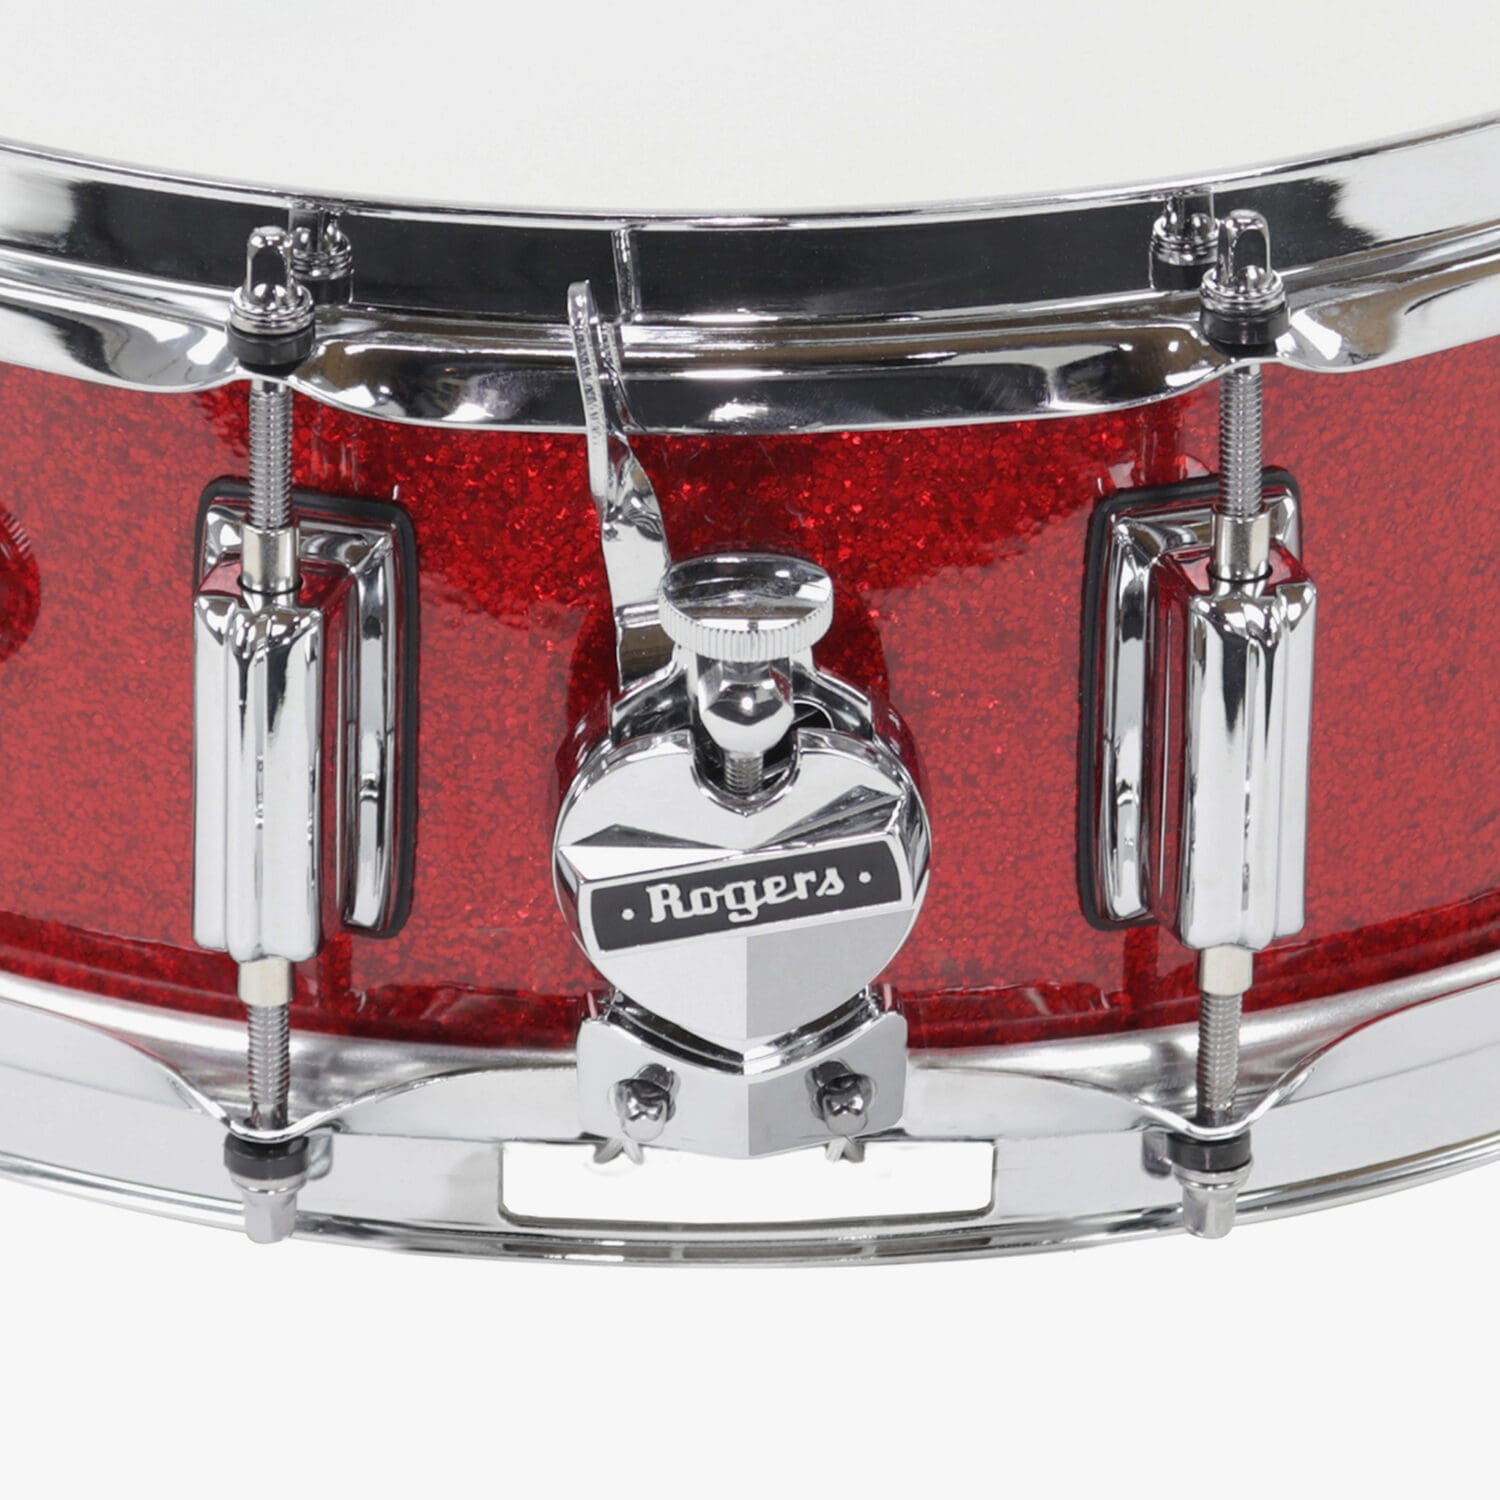 Red Sparkle Wrap SuperTen Snare Drum